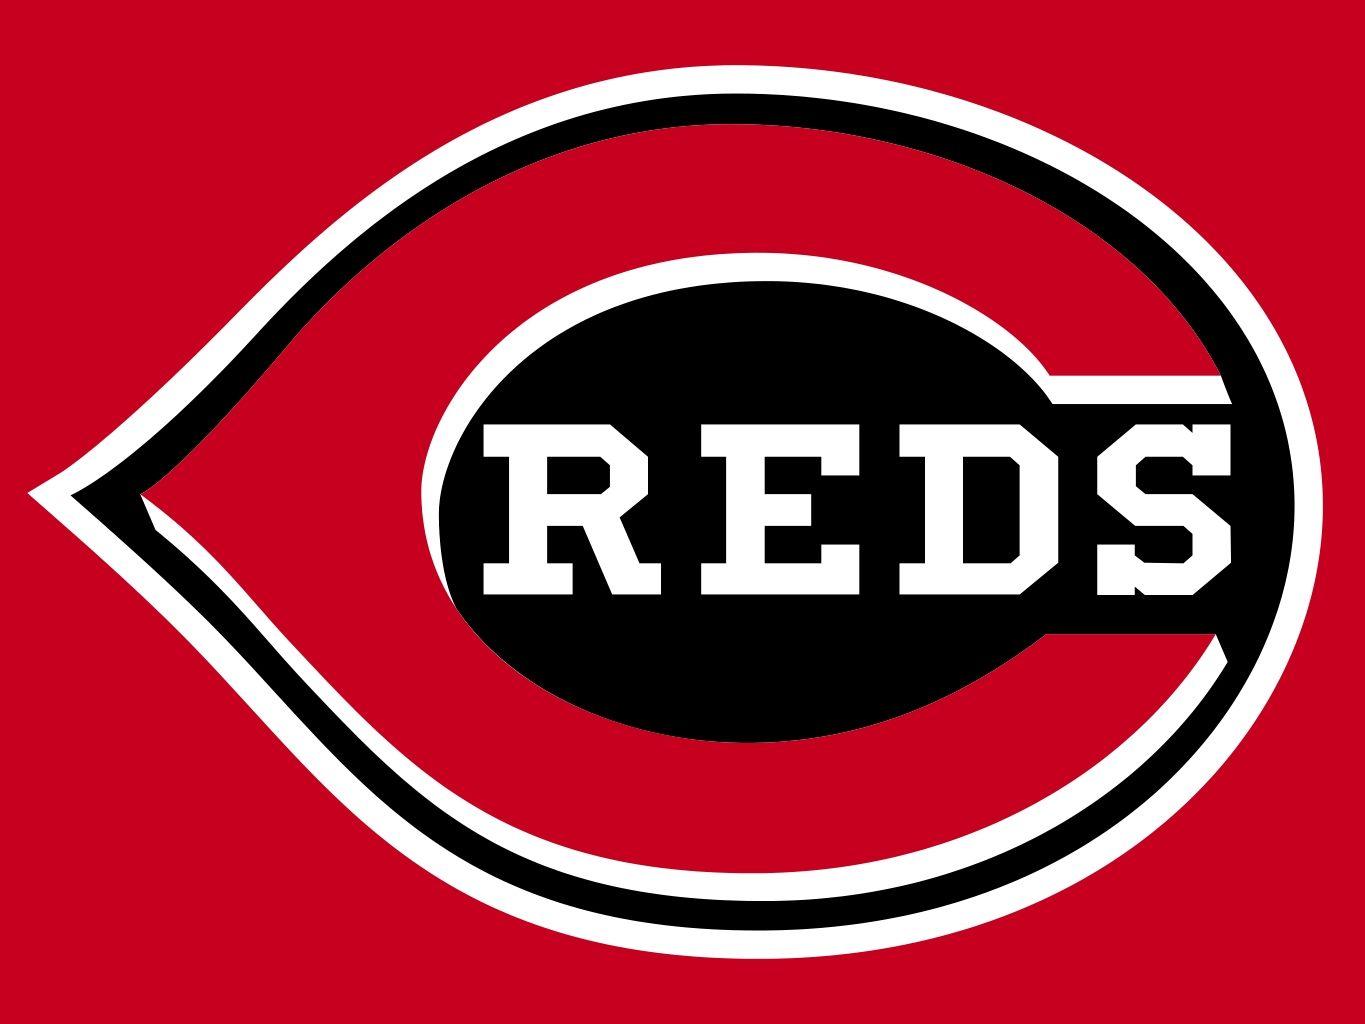 Cincinnati Team Logo - Cincinnati Reds Team | Cincinnati Reds Team Logo Wallpaper | Free ...